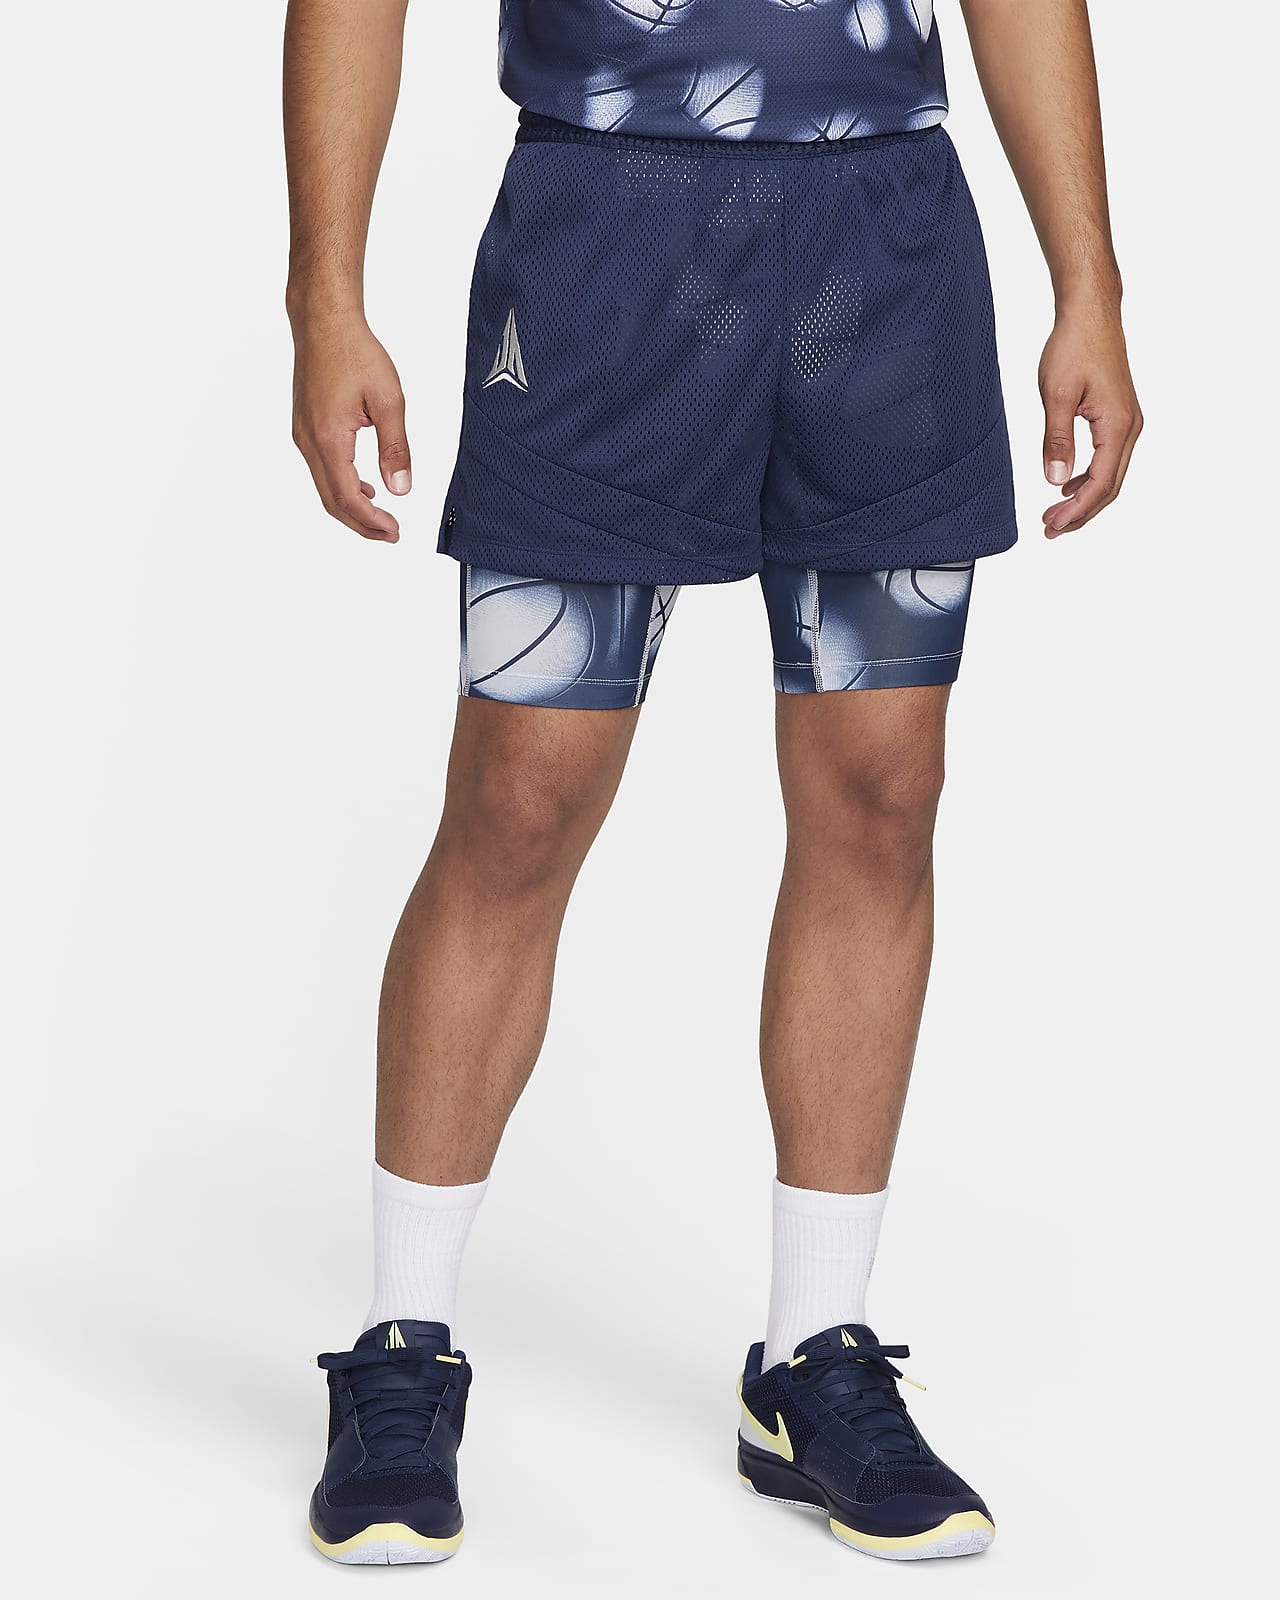 Shorts de básquetbol Dri-FIT de 10 cm 2 en 1 para hombre Ja